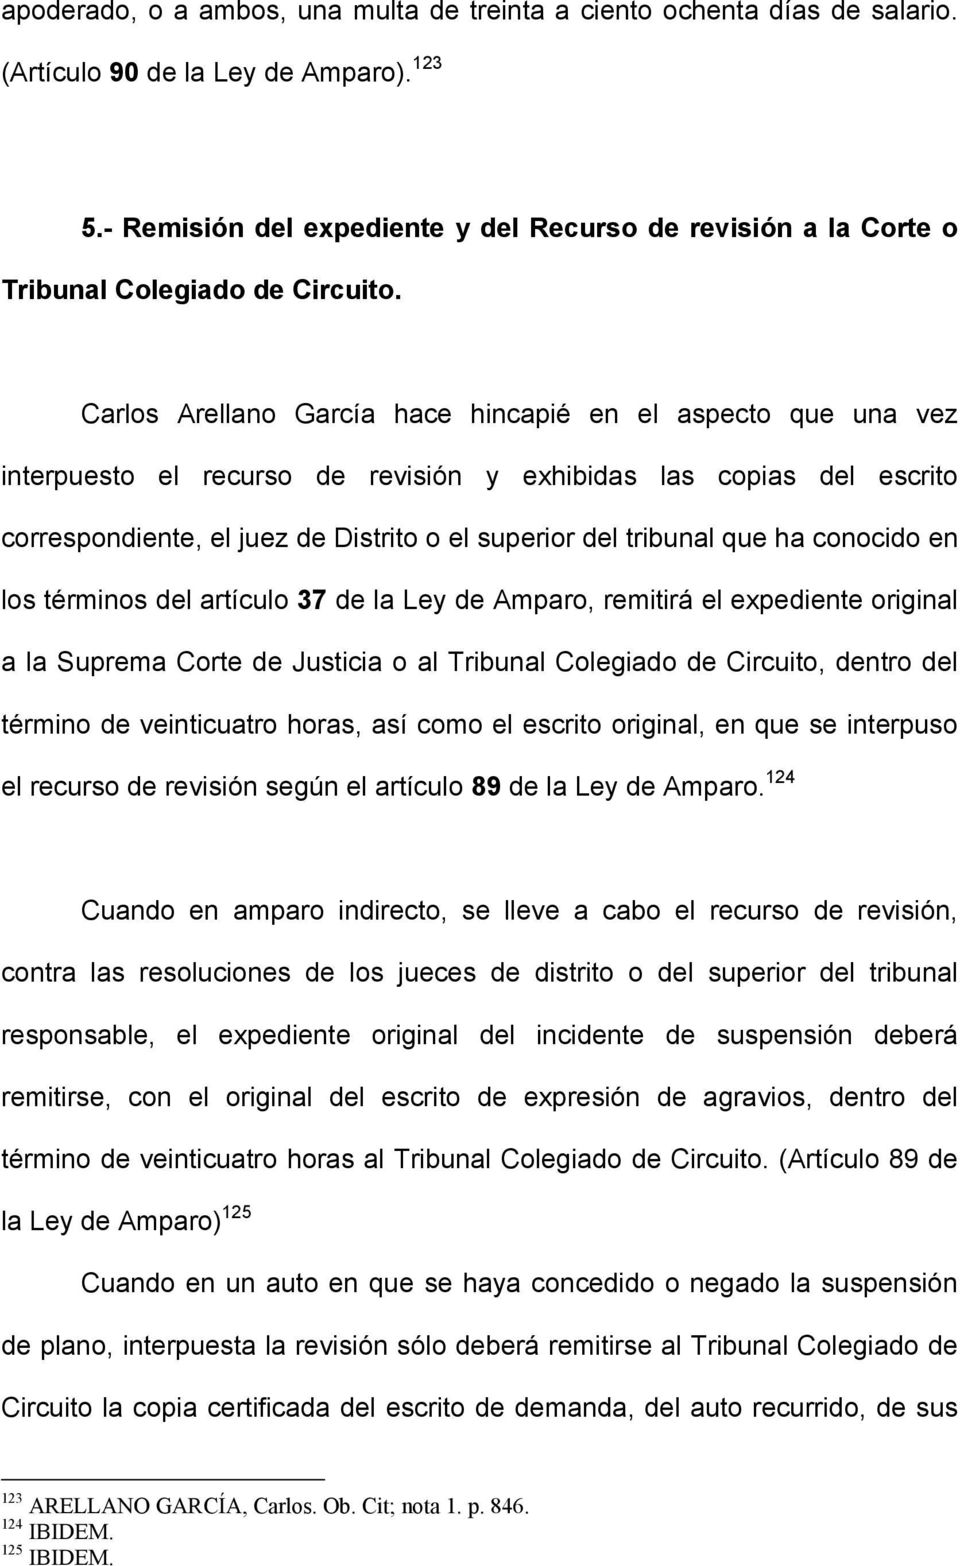 Carlos Arellano García hace hincapié en el aspecto que una vez interpuesto el recurso de revisión y exhibidas las copias del escrito correspondiente, el juez de Distrito o el superior del tribunal